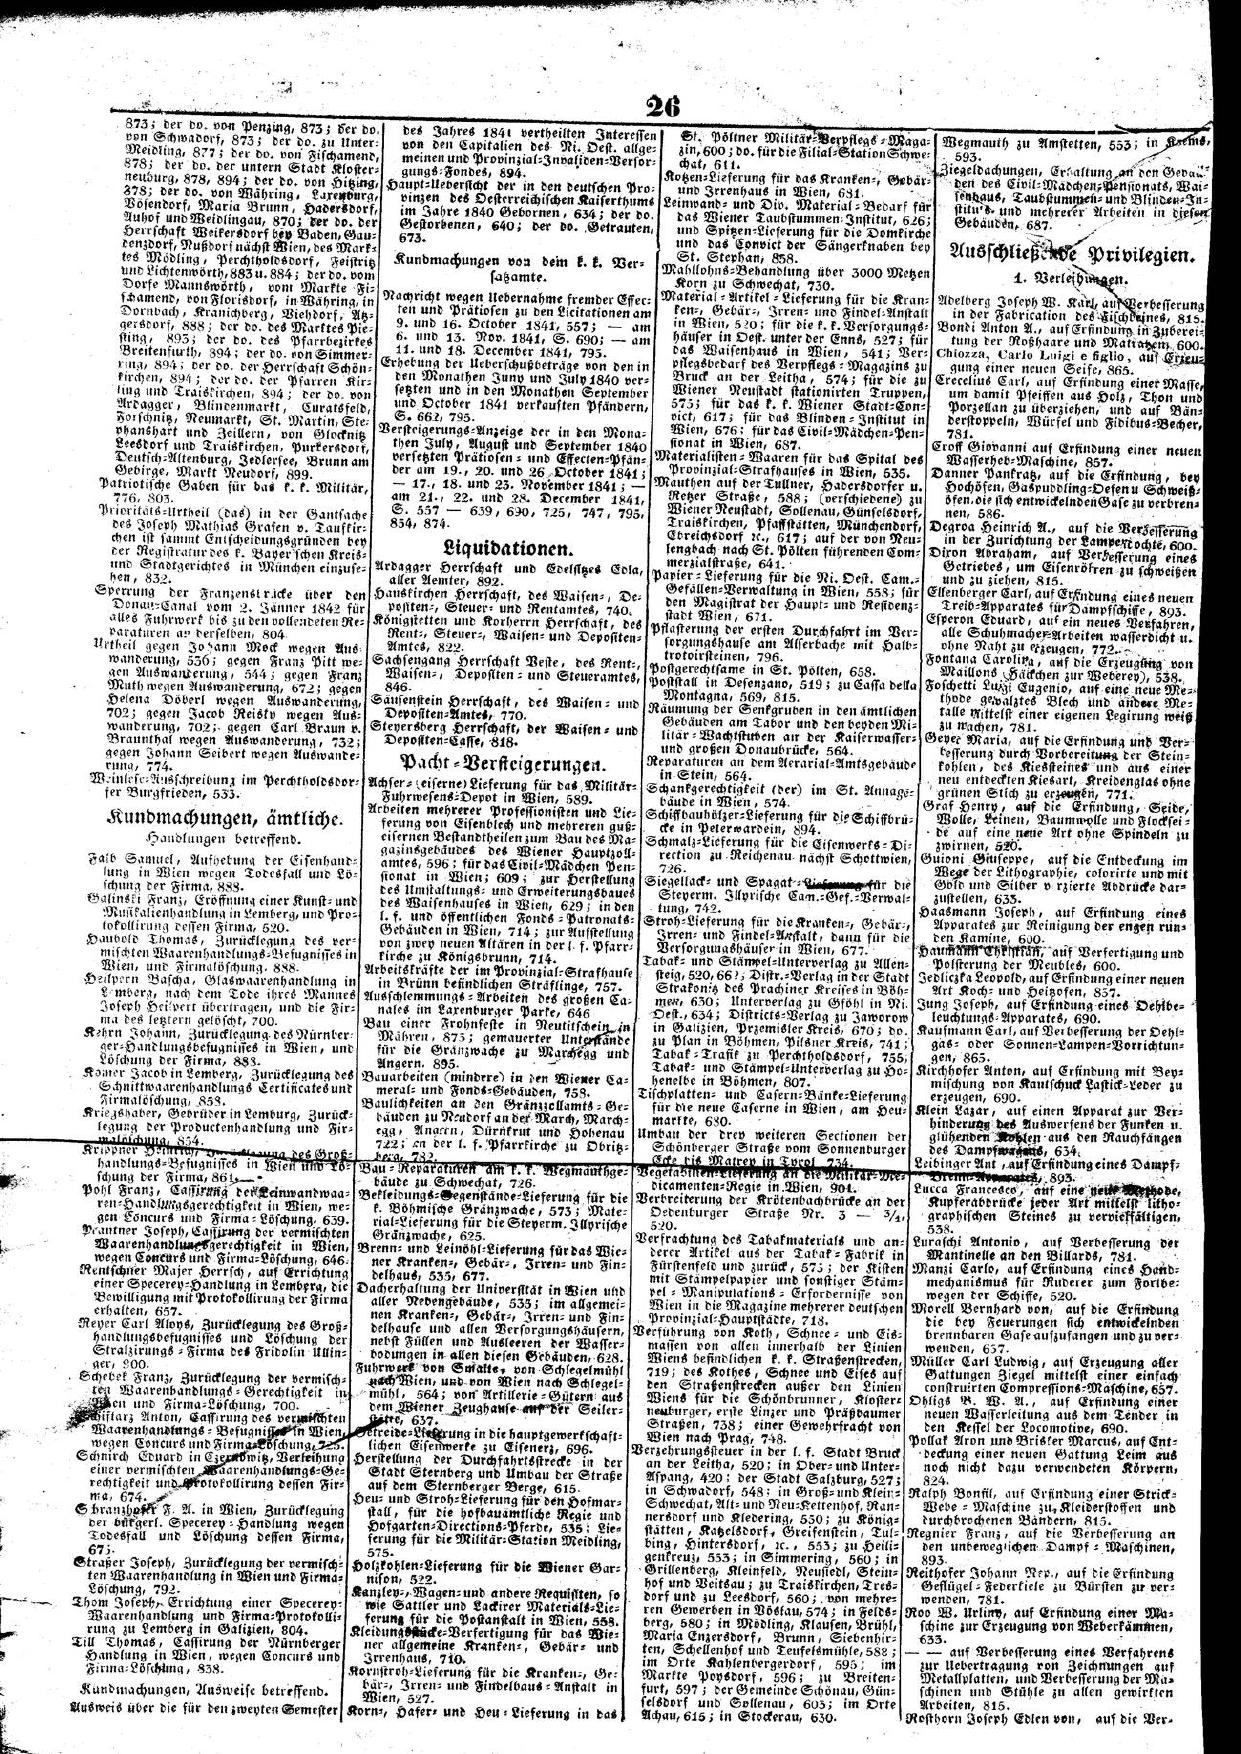 Amtsblatt zur Wiener Zeitung Jahrgang 1841 - Seite 25